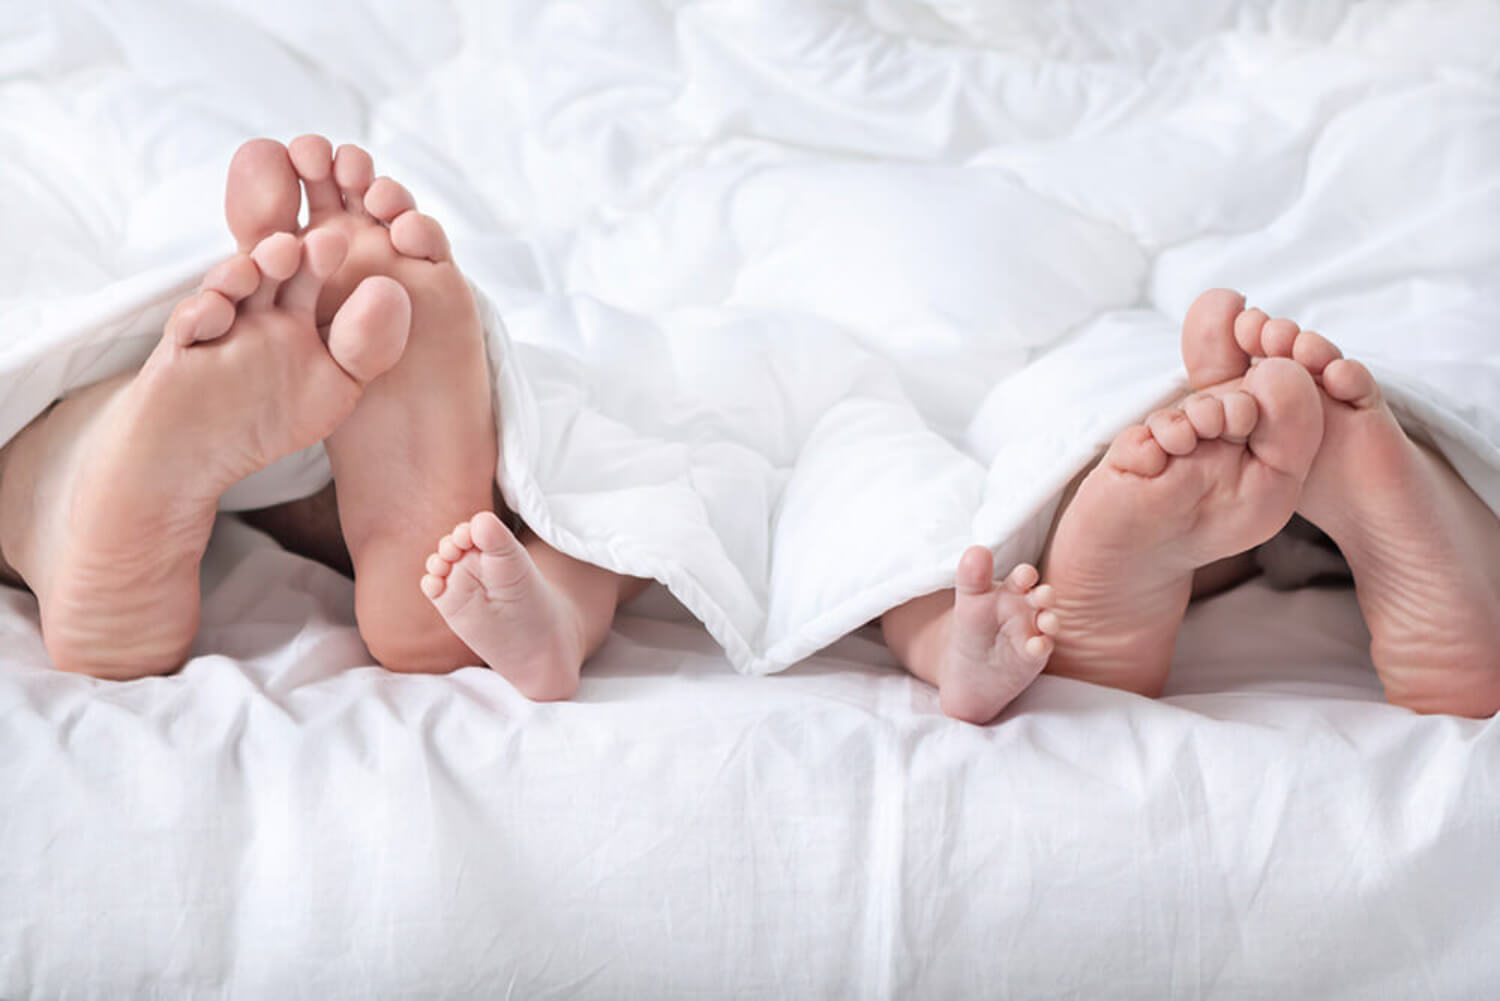 Pies de los padres y de su bebé en la cama antes de seguir los consejos para pasar del colecho a la cama sin traumas para los niños.